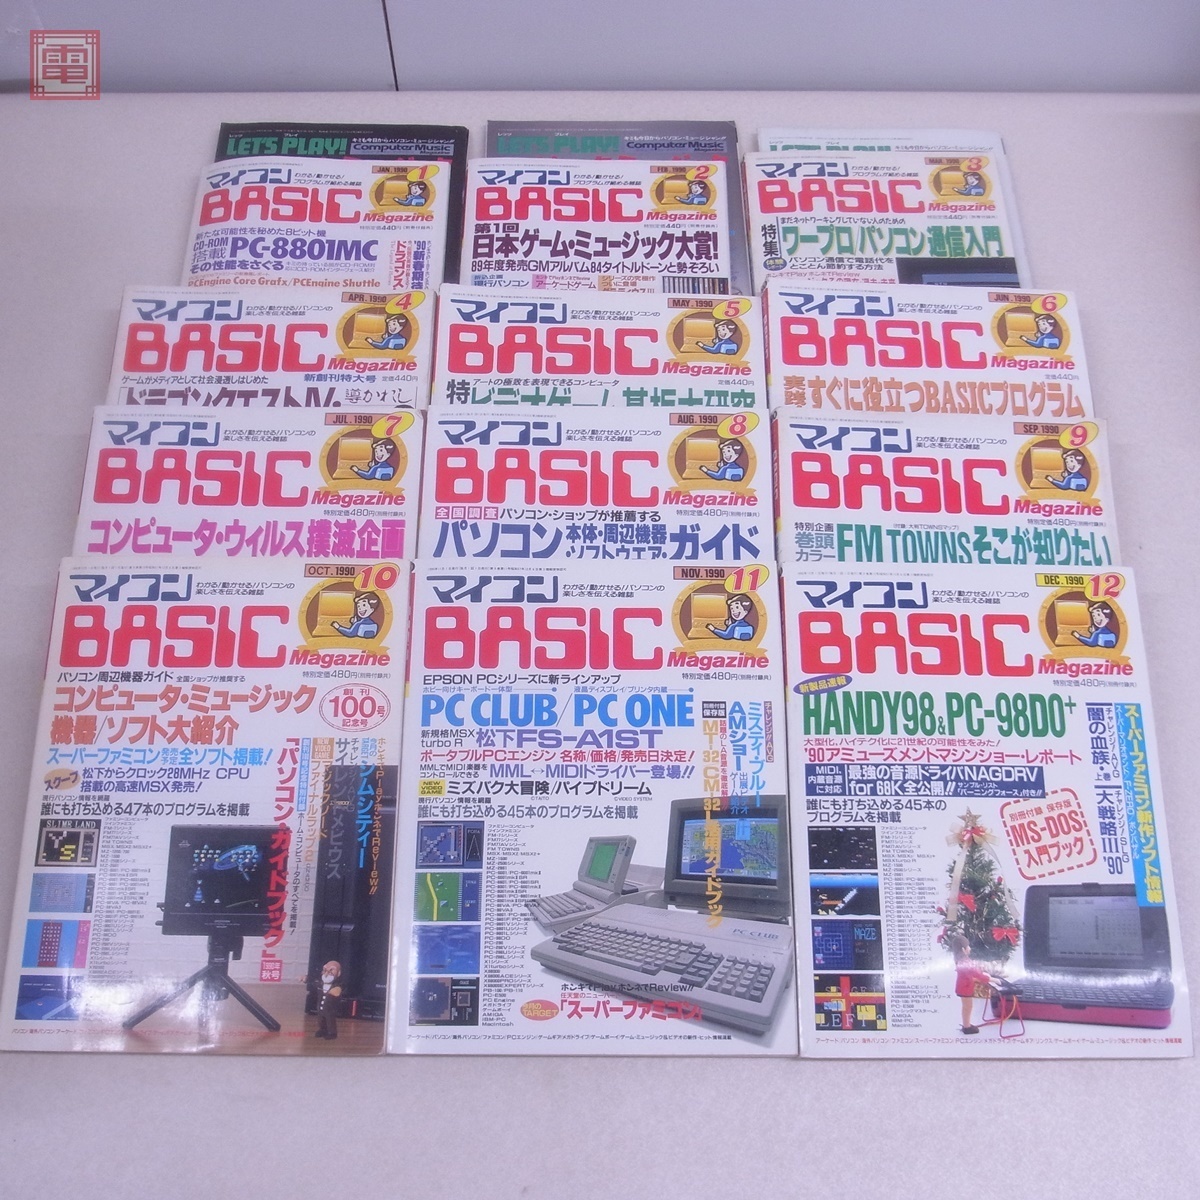  журнал microcomputer BASIC журнал 1990 год 1 месяц номер ~12 месяц номер итого 12 шт. через год .. беж maga радиоволны газета фирма не осмотр товар [20